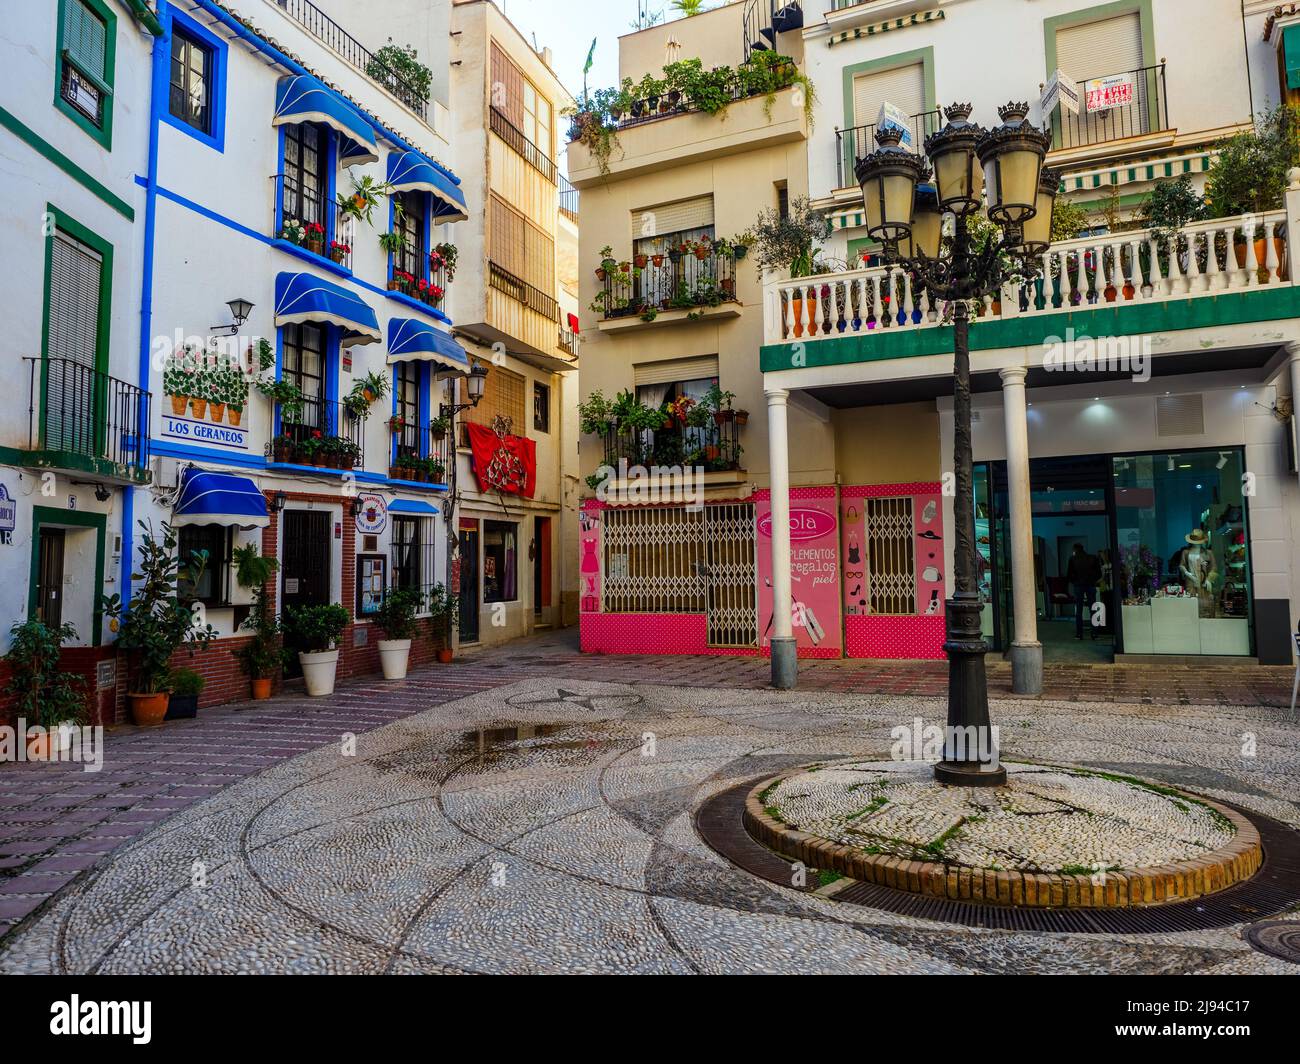 Platz im alten Teil der touristischen Stadt Almunecar an der costa Tropical - Andalusien, Spanien Stockfoto